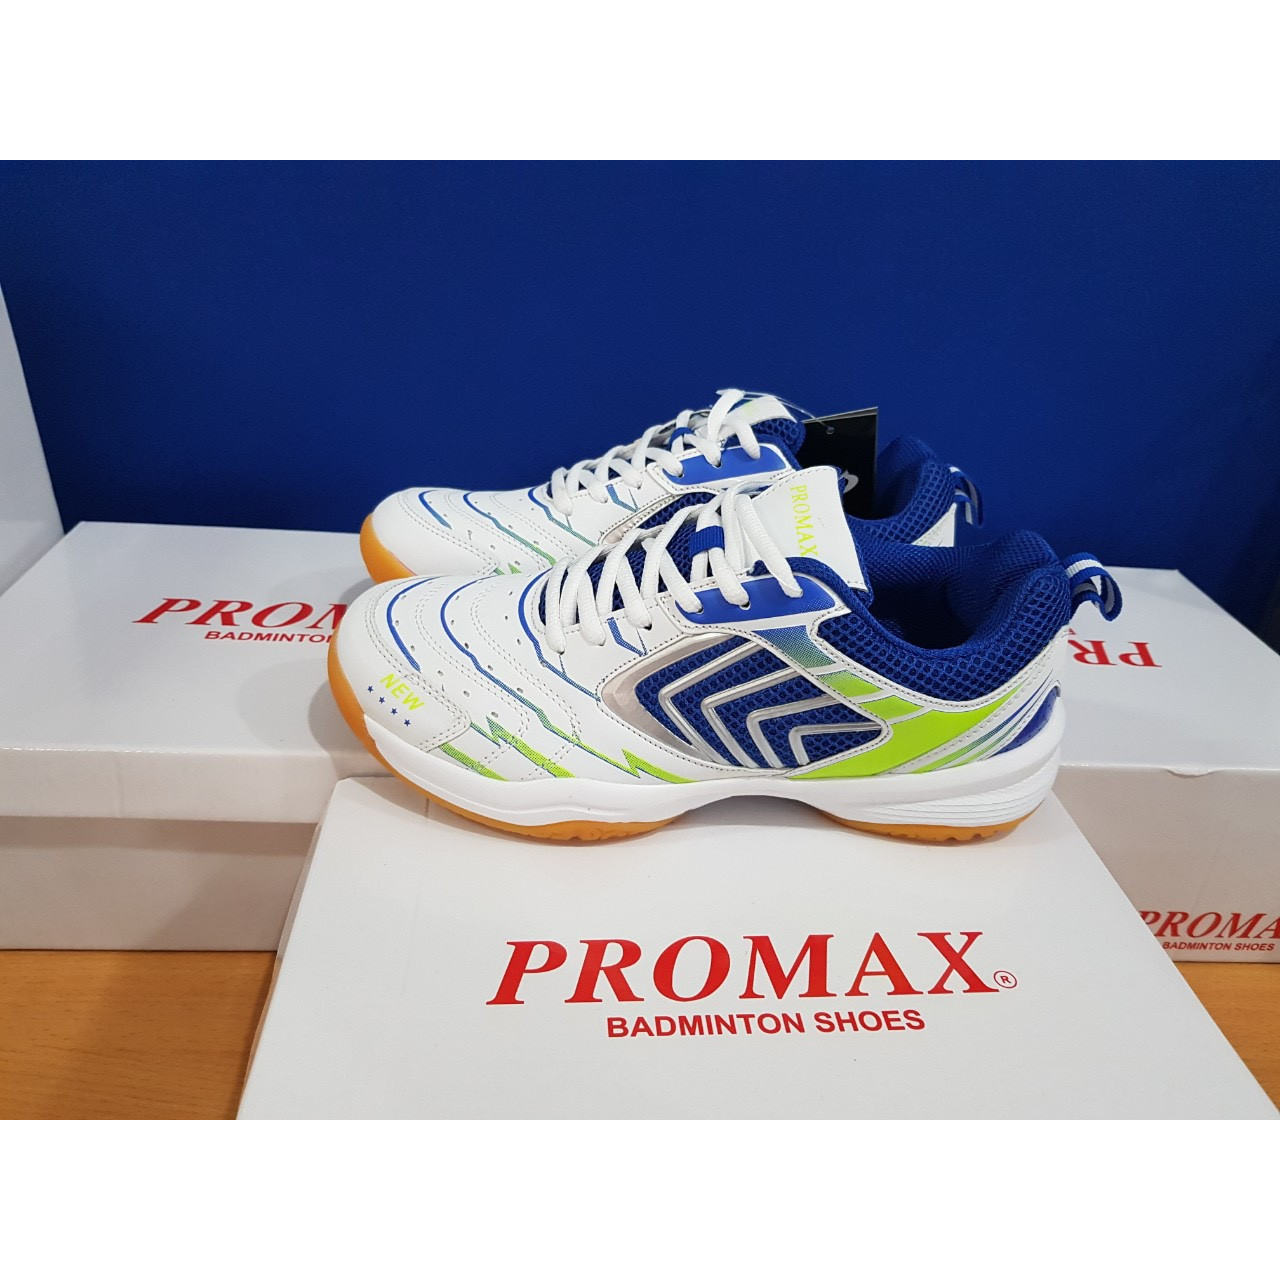 Giày cầu lông PROMAX PR-20018 màu xanh đen